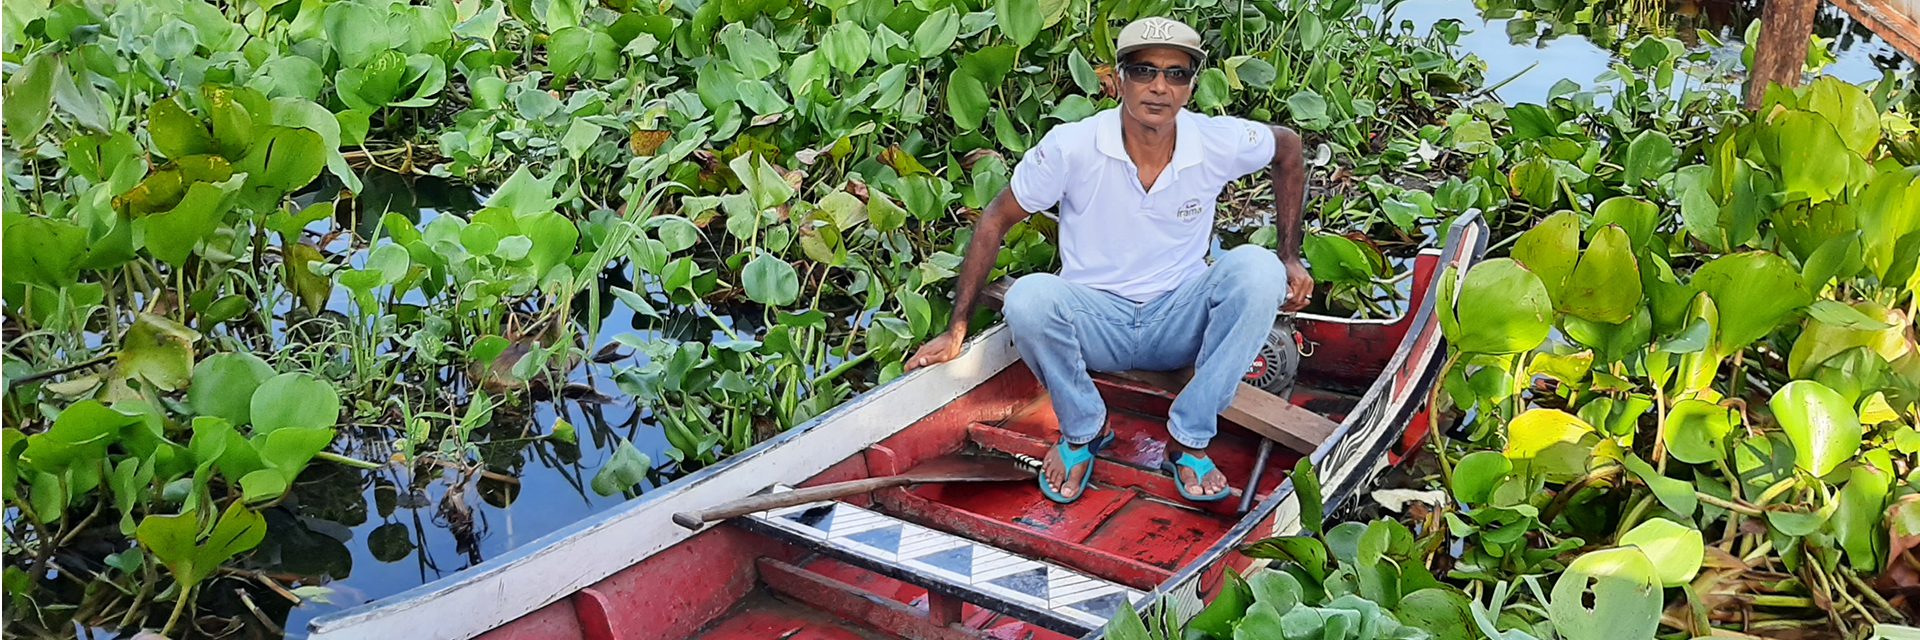 Защитник Амазонки Шаджи Томас гребет глубоко в леса, чтобы помочь племенам